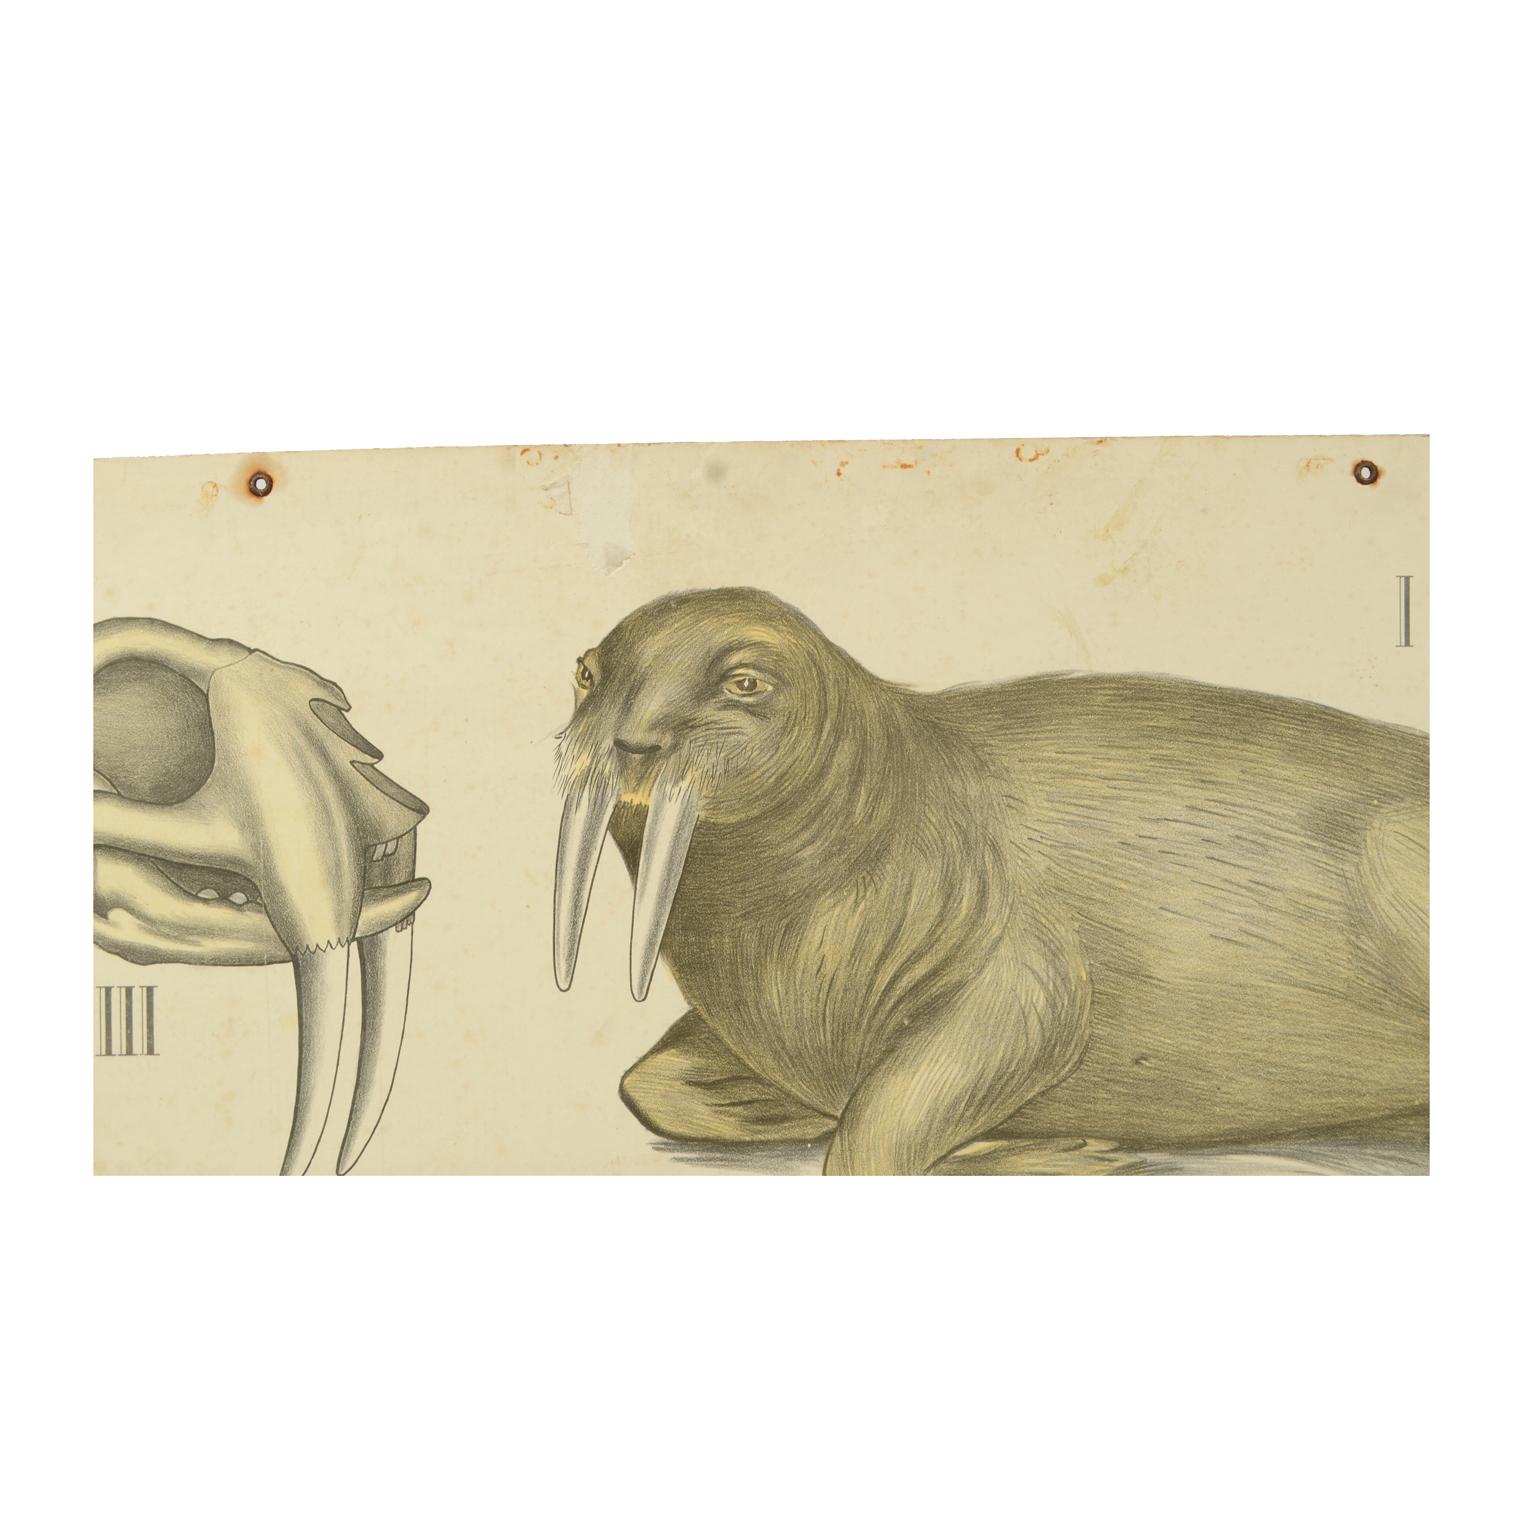 Zoologische Lehrtafel Nr. 21 Lithographie auf Karton aus dem Jahr 1912, die Wasserraubtiere darstellt. Dybdhals Zoologiske Plancher P.M.Bye & Co Oslo. Hergestellt von H Aschehoug & Co. Guter Zustand. Maße: 74.3 x 60 cm. - zoll 29,2 x 23,6.
H.